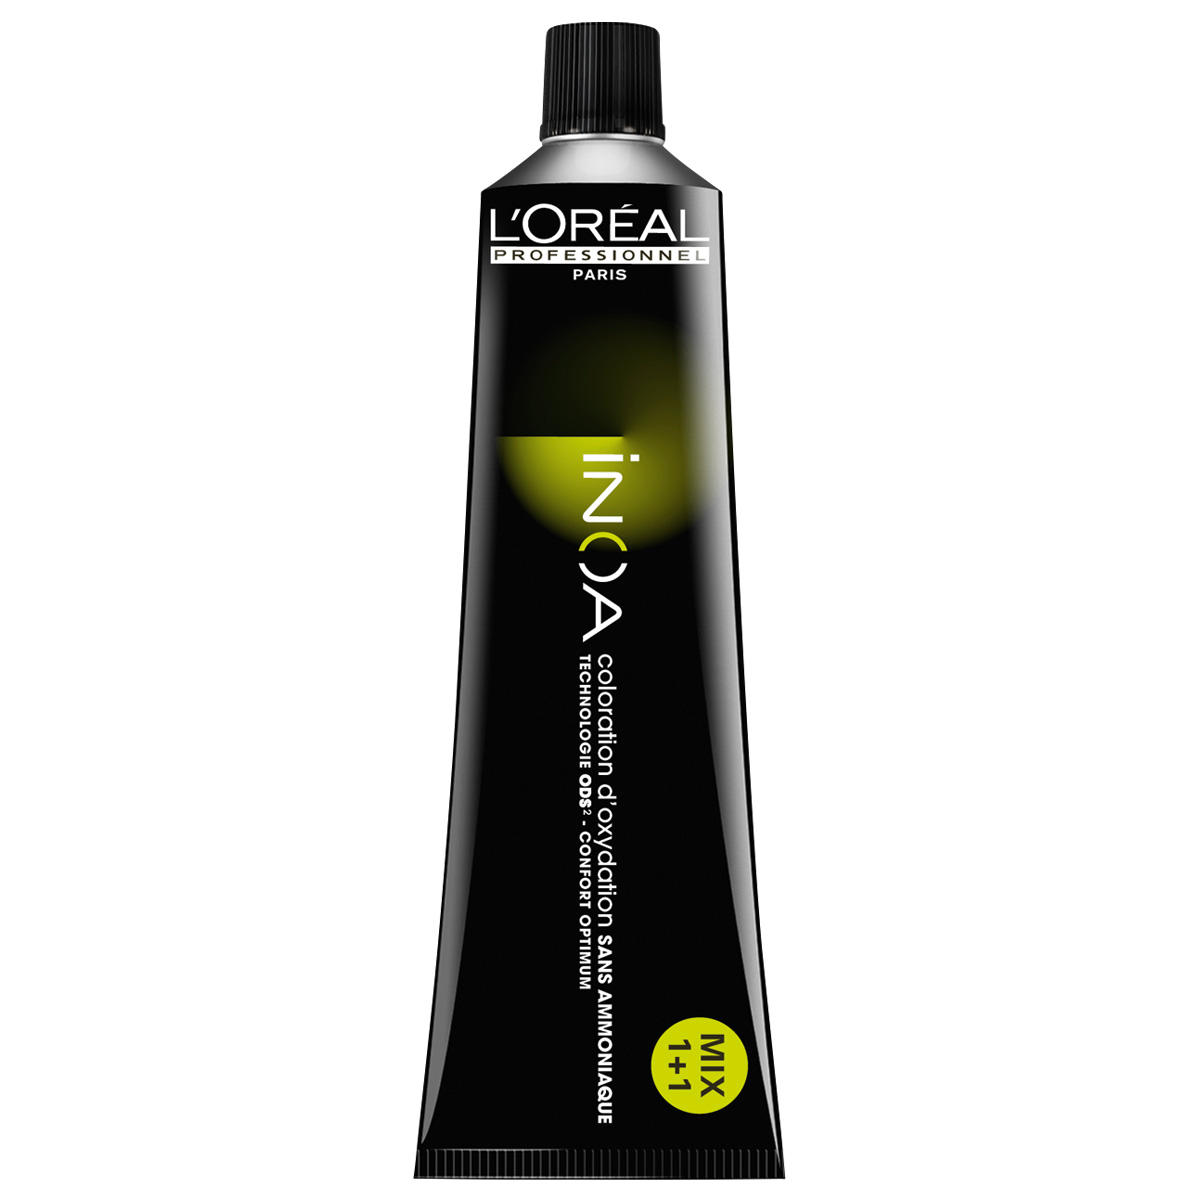 L'Oréal Professionnel Paris Coloration 7.24 Medium blond irisé koper, tube 60 ml